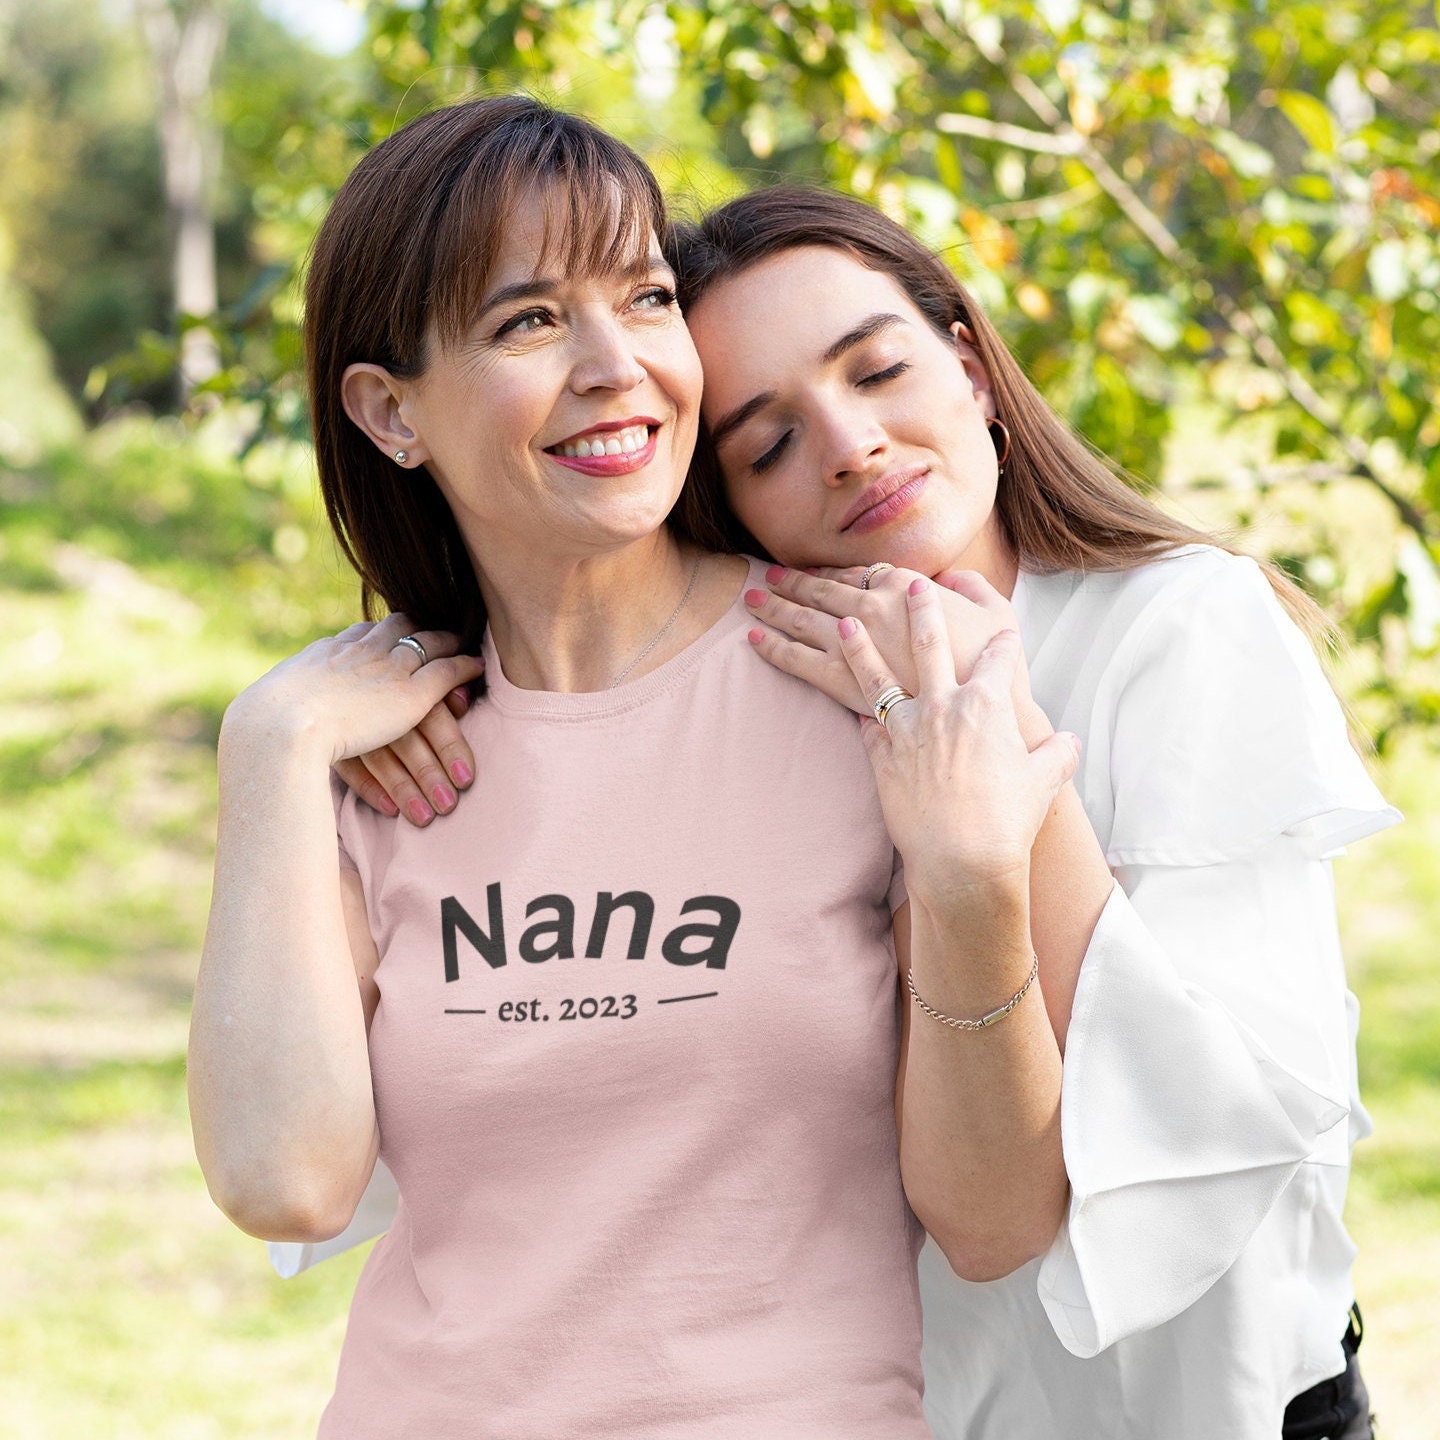 Nana 2023 SVG PNG Birth Announcement Nana Png New Nana - Etsy Ireland